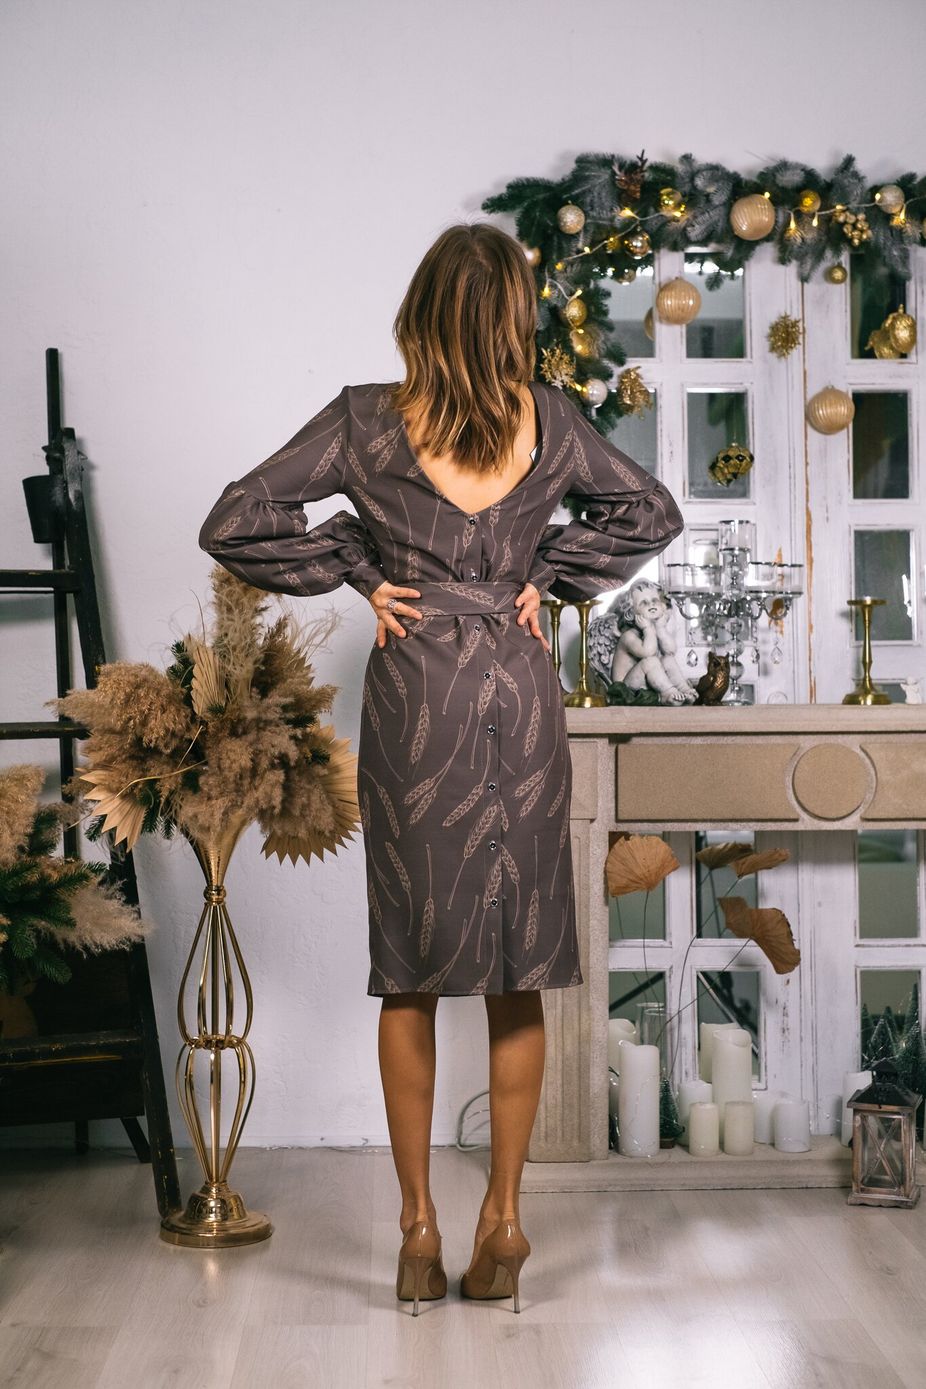 Платье с откытой спиной и объемными рукавами в принт колоски, Шоколадный, XS-S